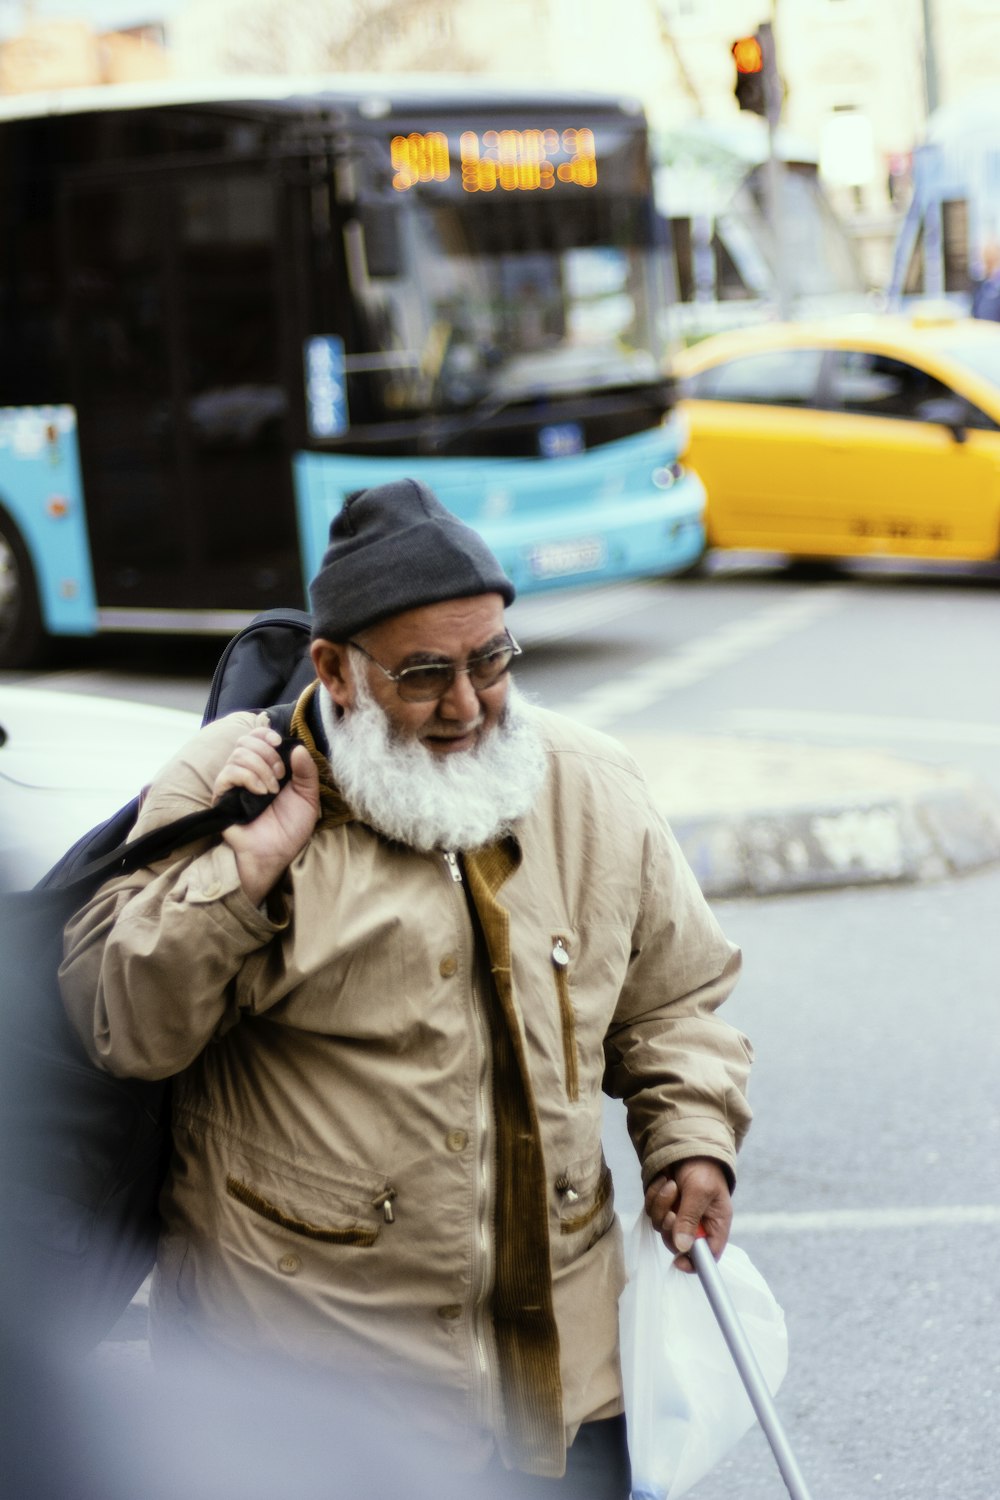 Mann in brauner Jacke und blauer Strickmütze tagsüber auf dem Bürgersteig